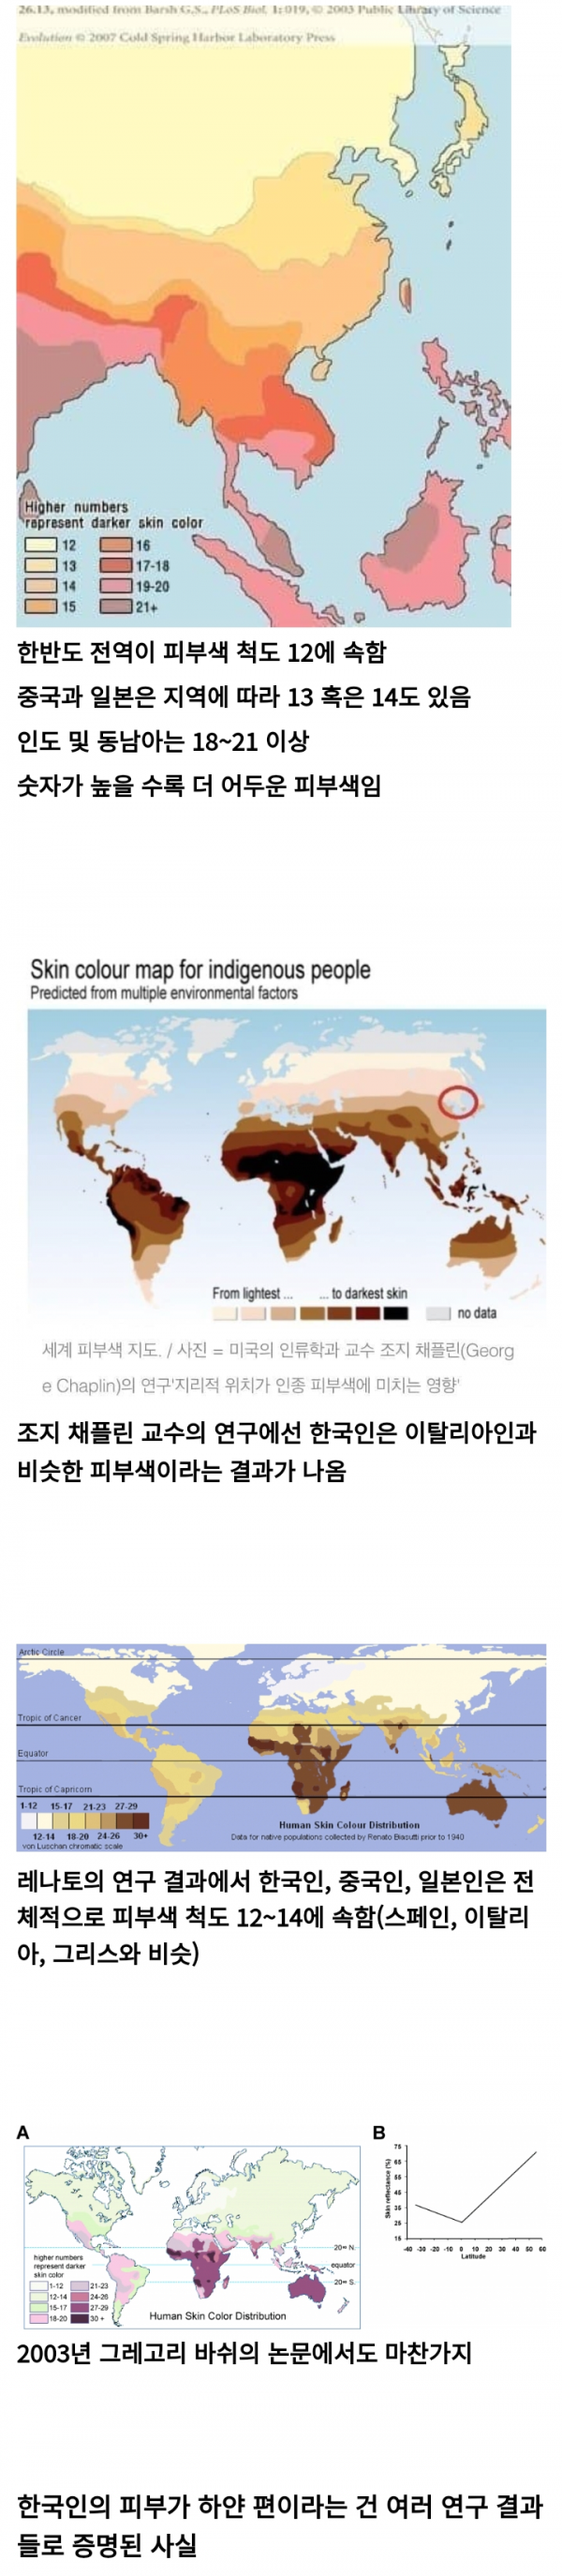 아시아에서 가장 하얗다는 한국인 피부색